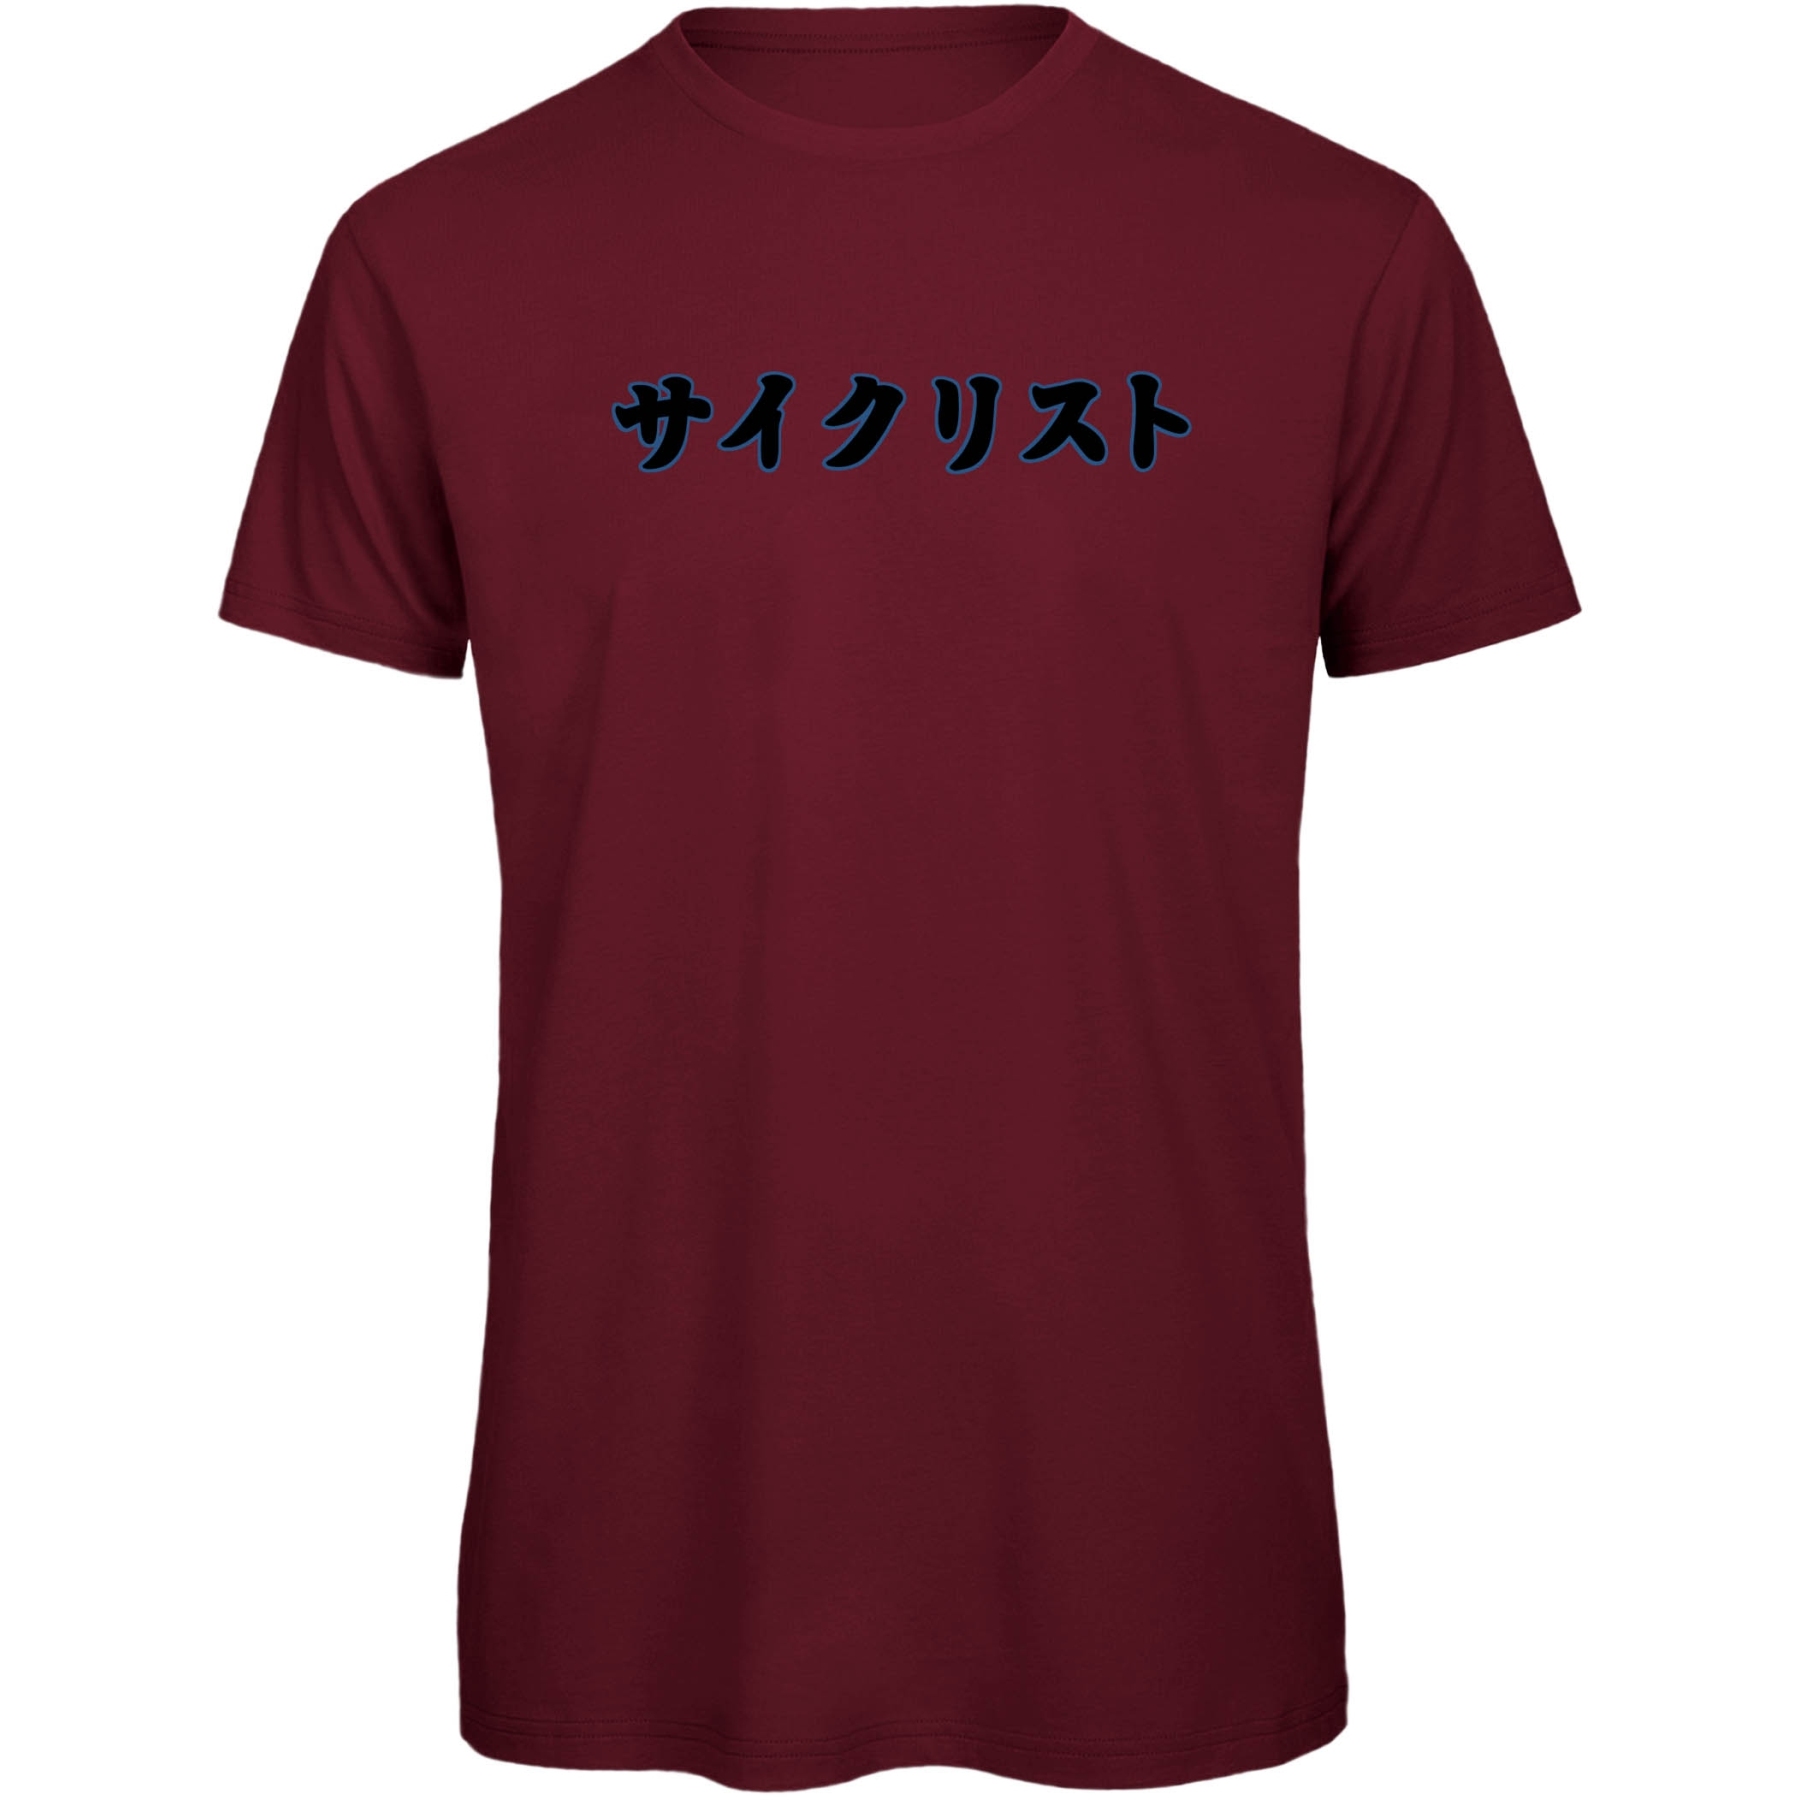 Produktbild von RTTshirts Fahrrad T-Shirt Saikurisuto - bordeaux